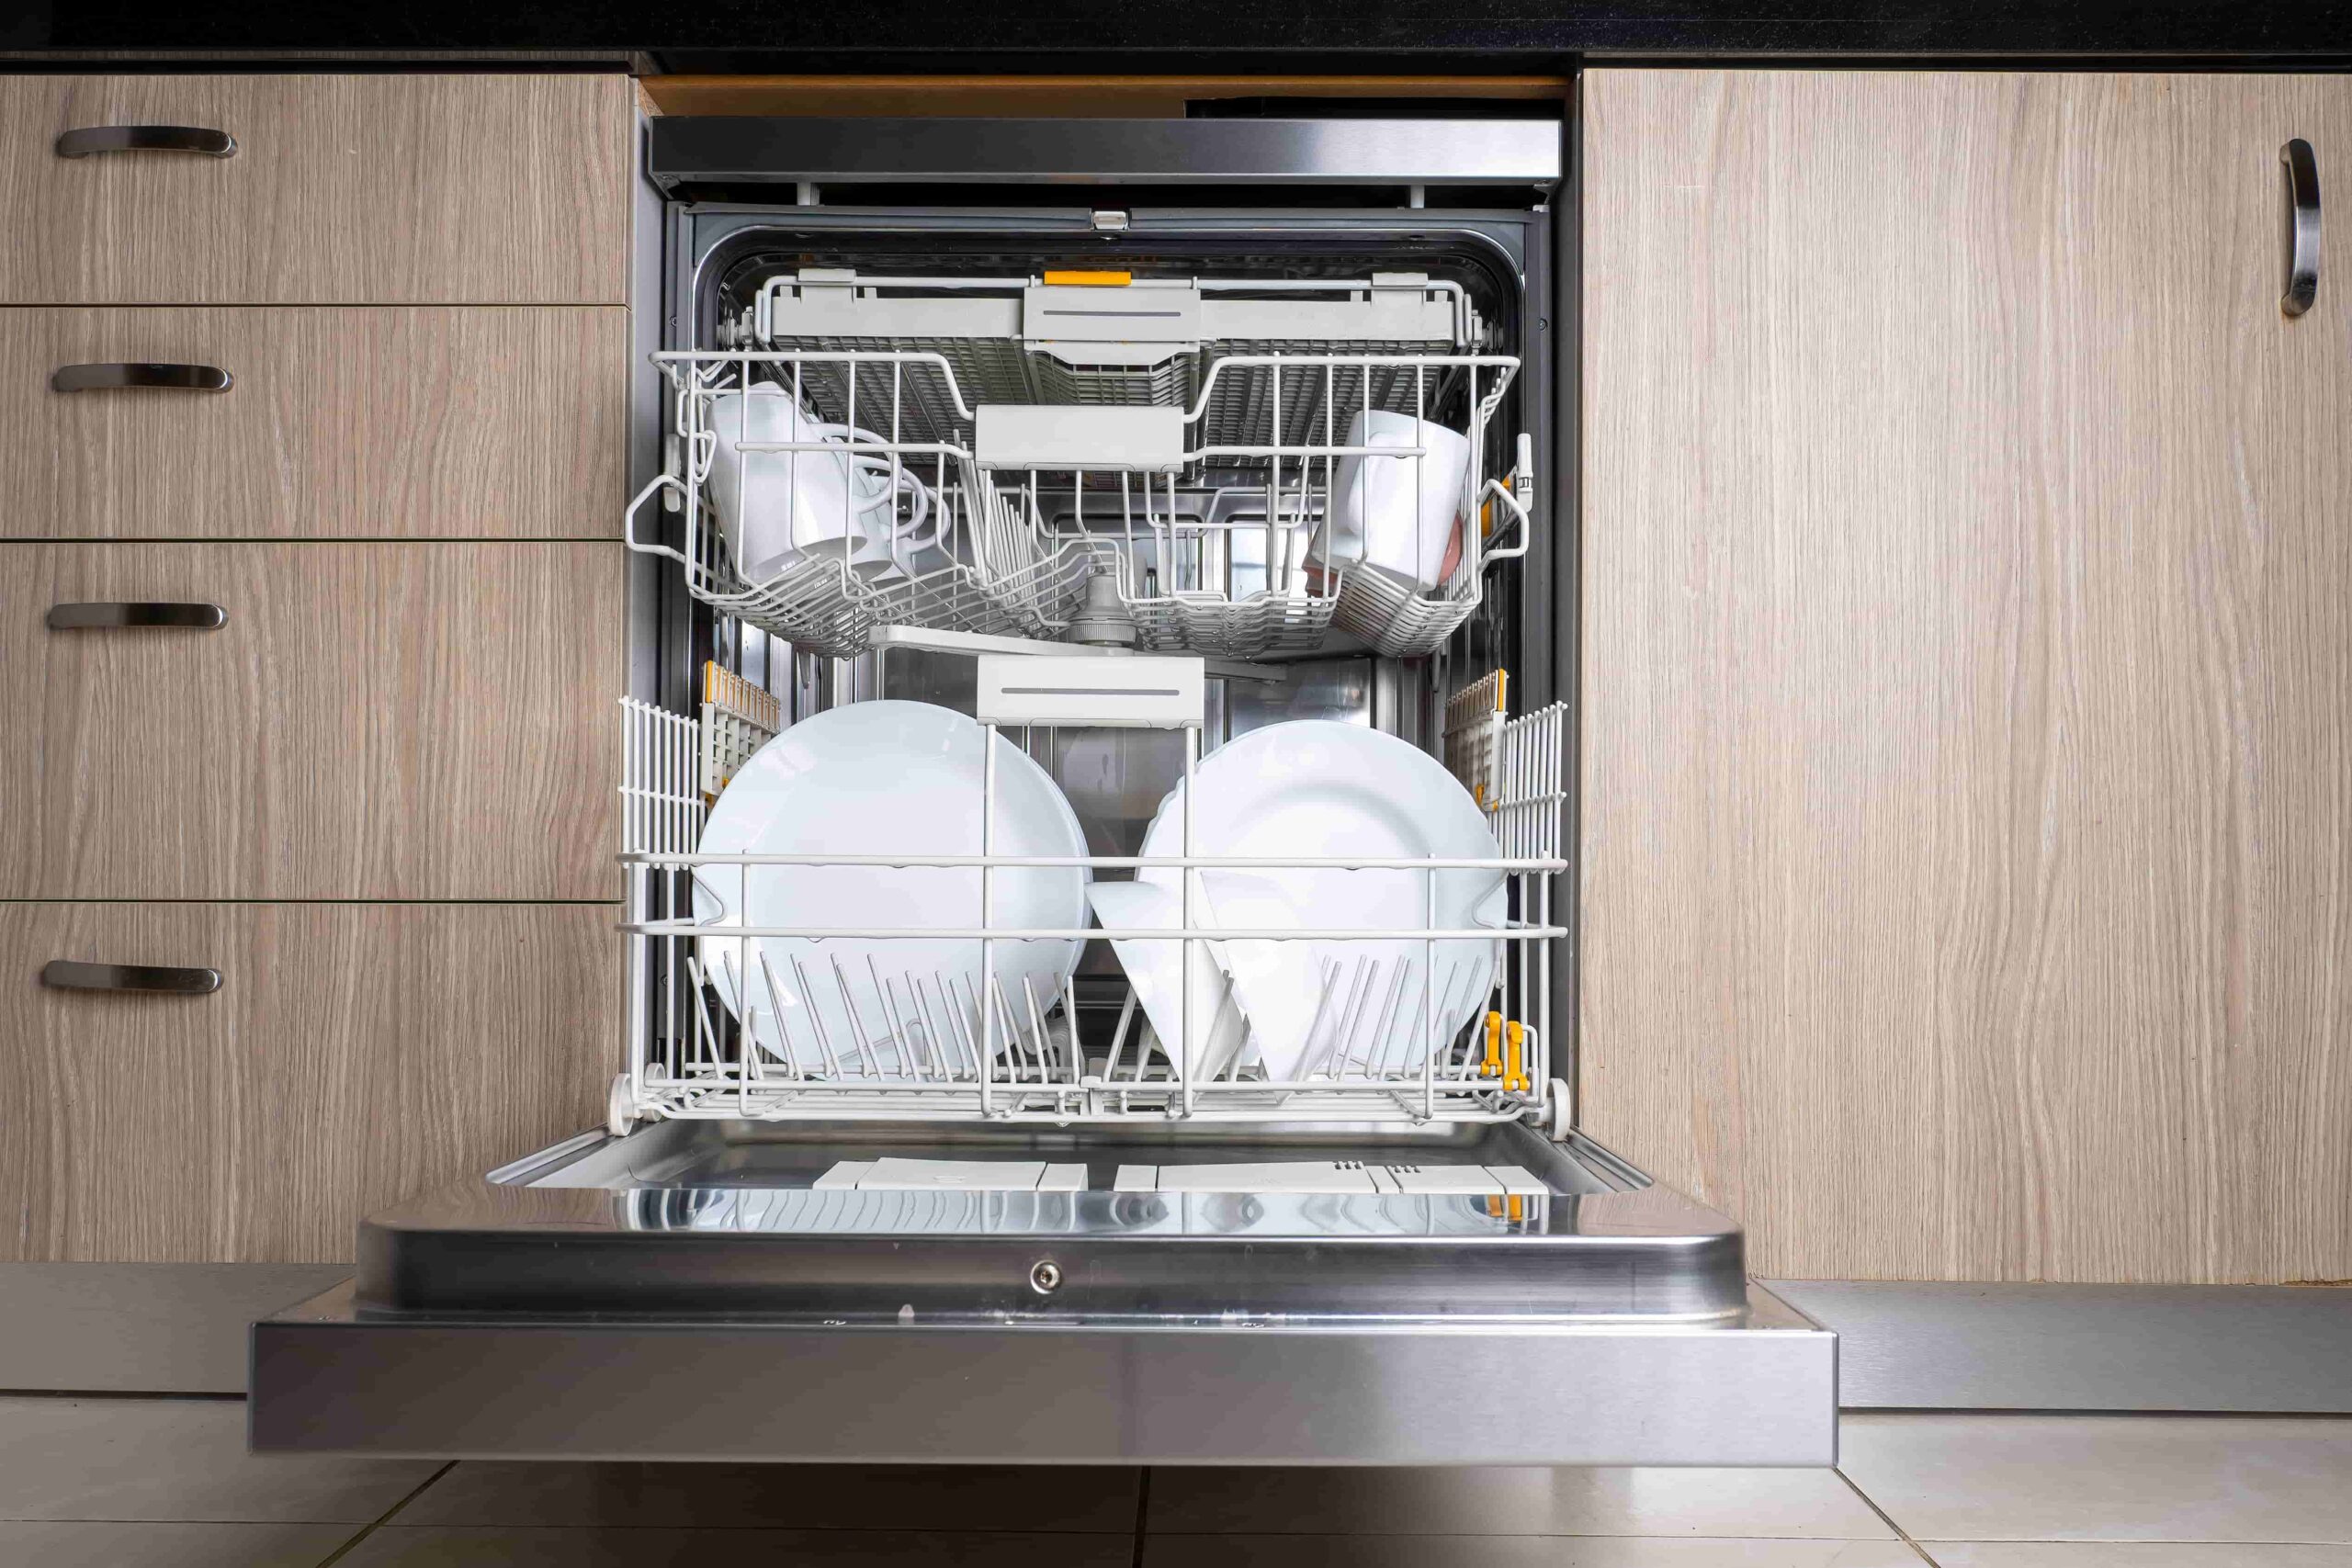 Посудомоечная машина в интерьере. Посудомоечная машина не встраиваемая. Посудомойка 45 см с тремя корзинами. Посудомойка 45 см встраиваемая под варочную панель.